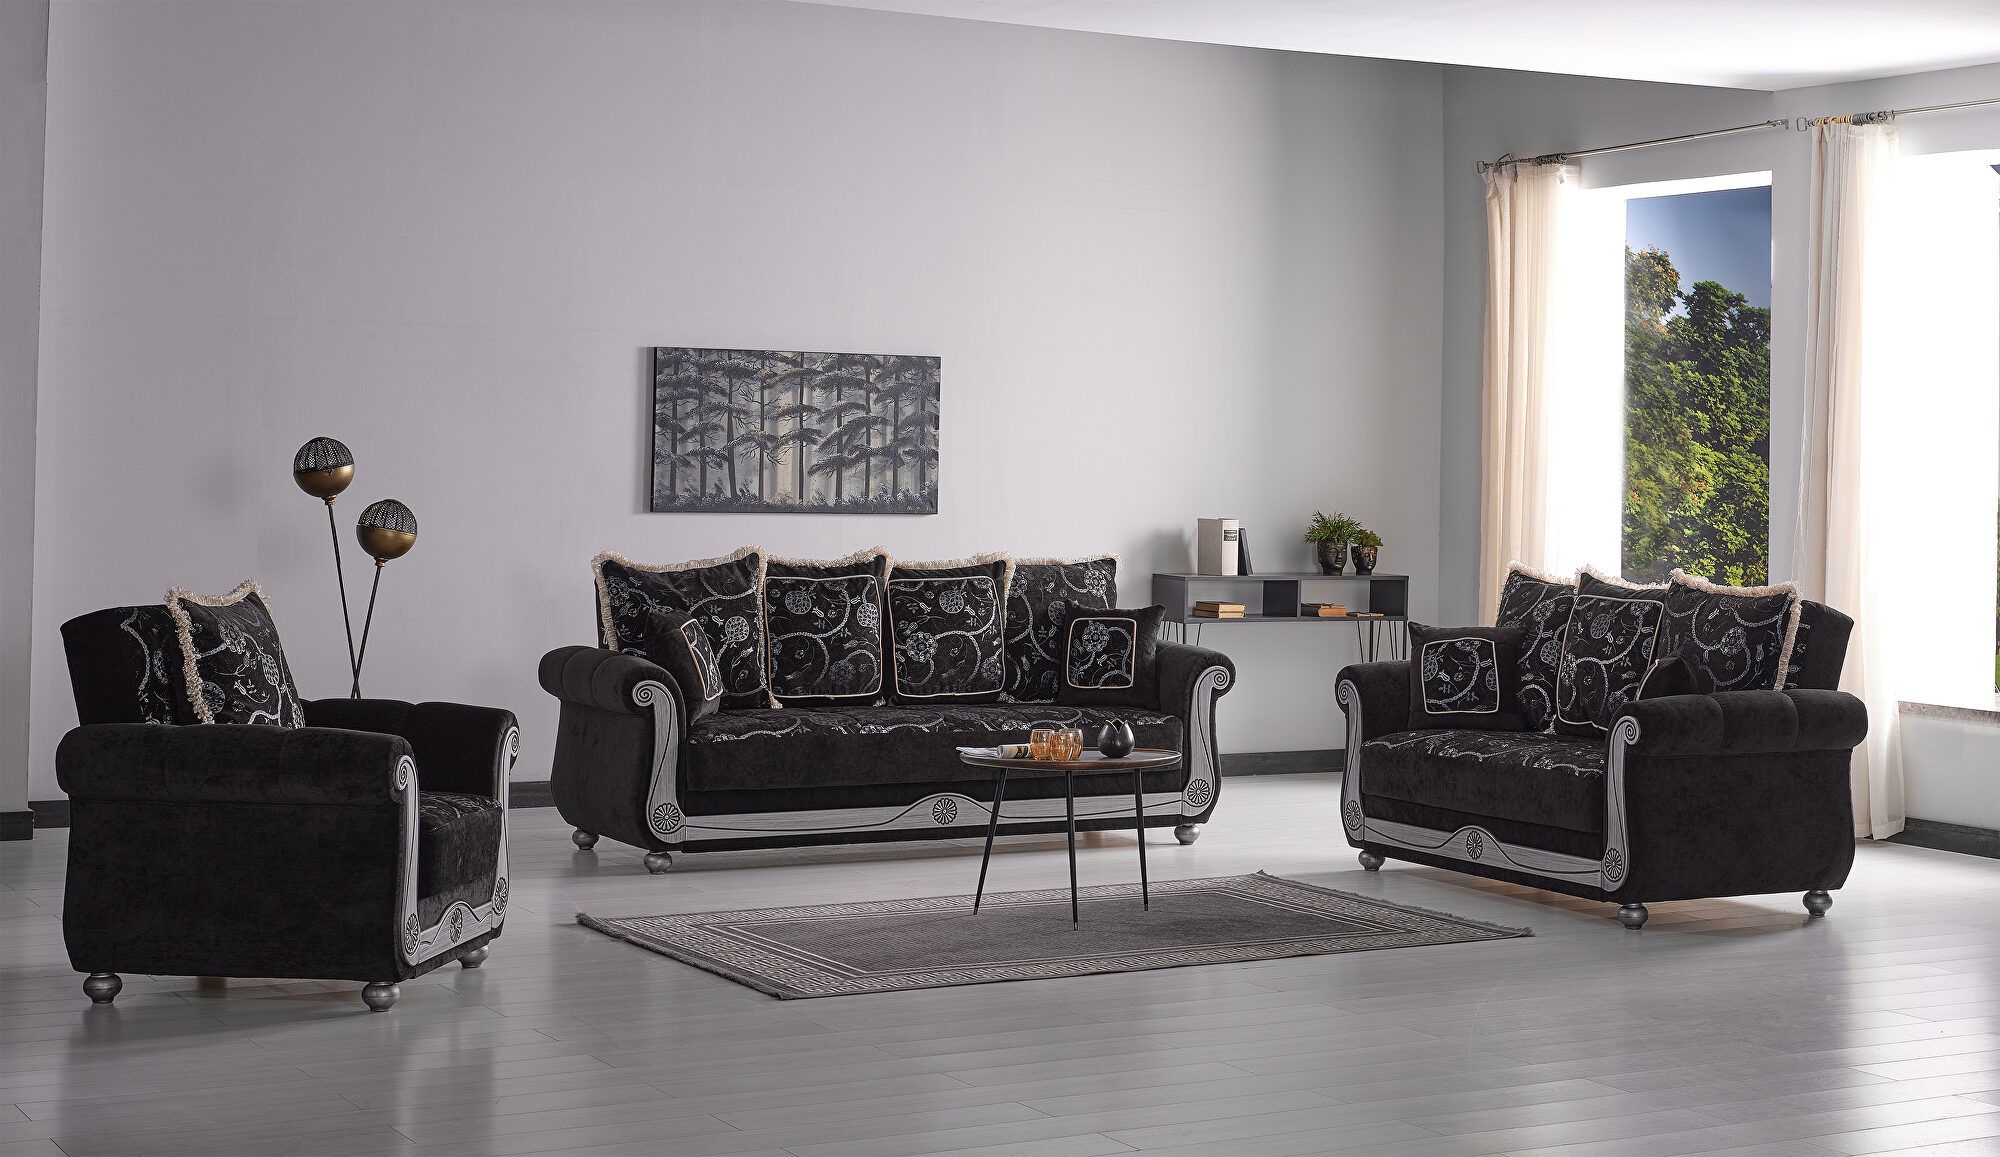 Casamode Americana Black Sofa Americana | Comfyco Inside Traditional Black Fabric Sofas (View 5 of 15)